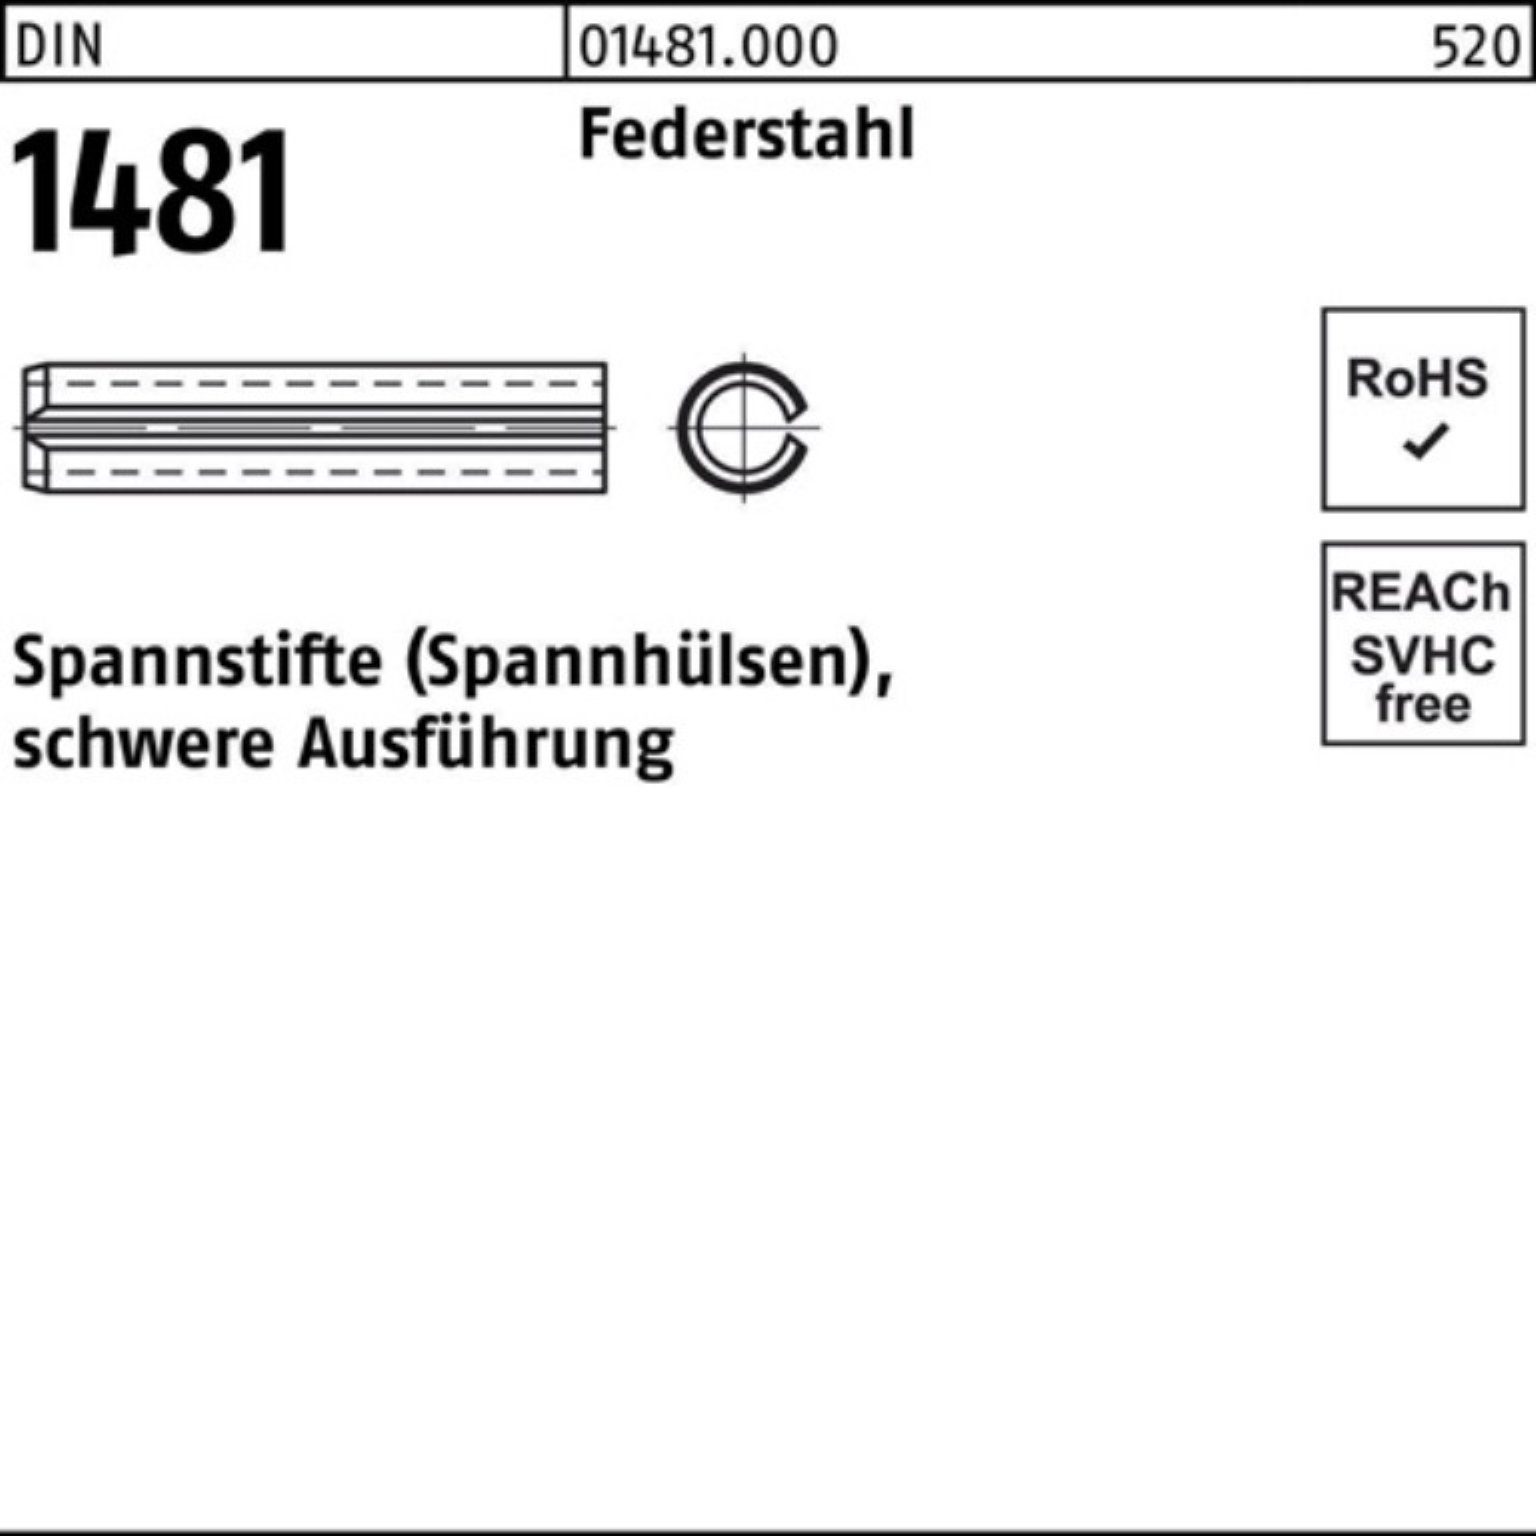 Reyher Spannstift 100er Pack Spannstift Ausführung DIN 10x 1481 Federstahl schwere 140